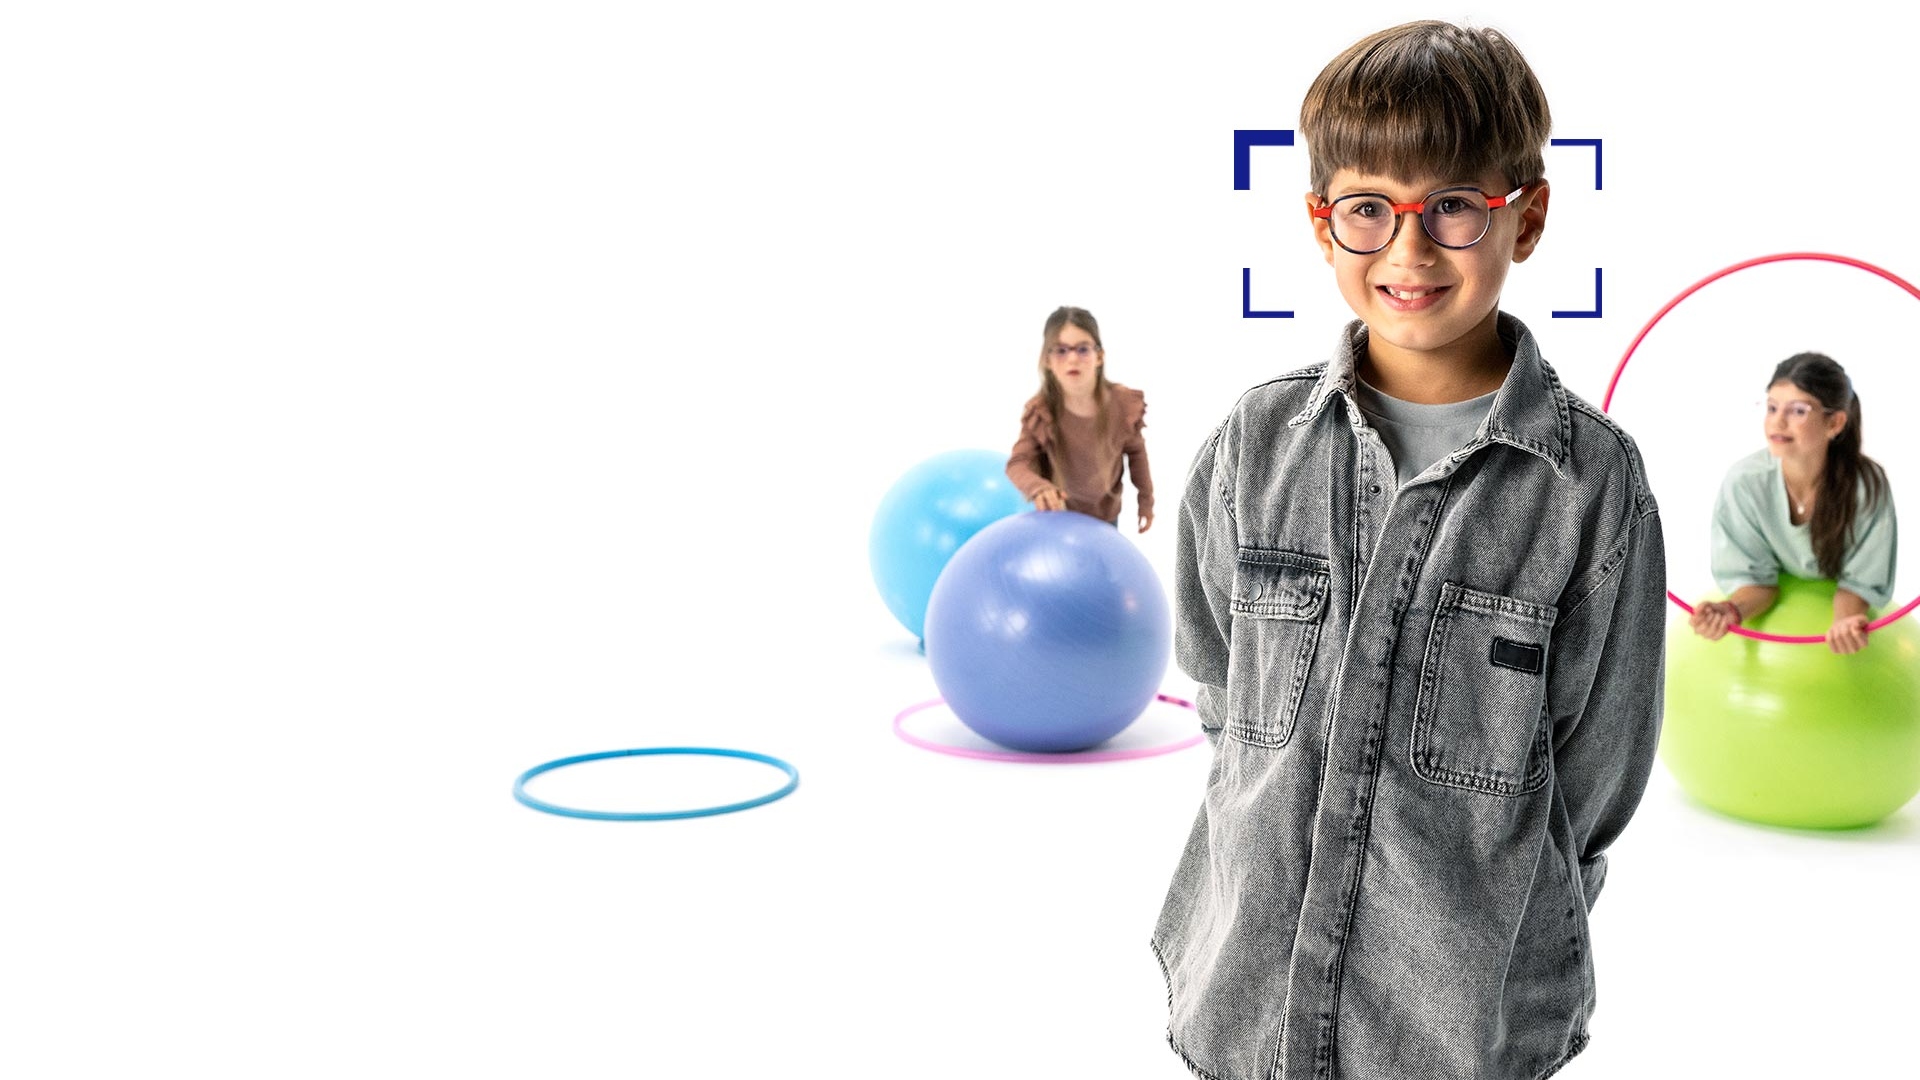 Bruinharige jongen met ronde bril met ZEISS MyoCare glazen staat op de voorgrond en glimlacht naar de camera. Op de achtergrond spelen twee meisjes met ZEISS MyoCare brillenglazen met hoepels en gymnastiekballen.